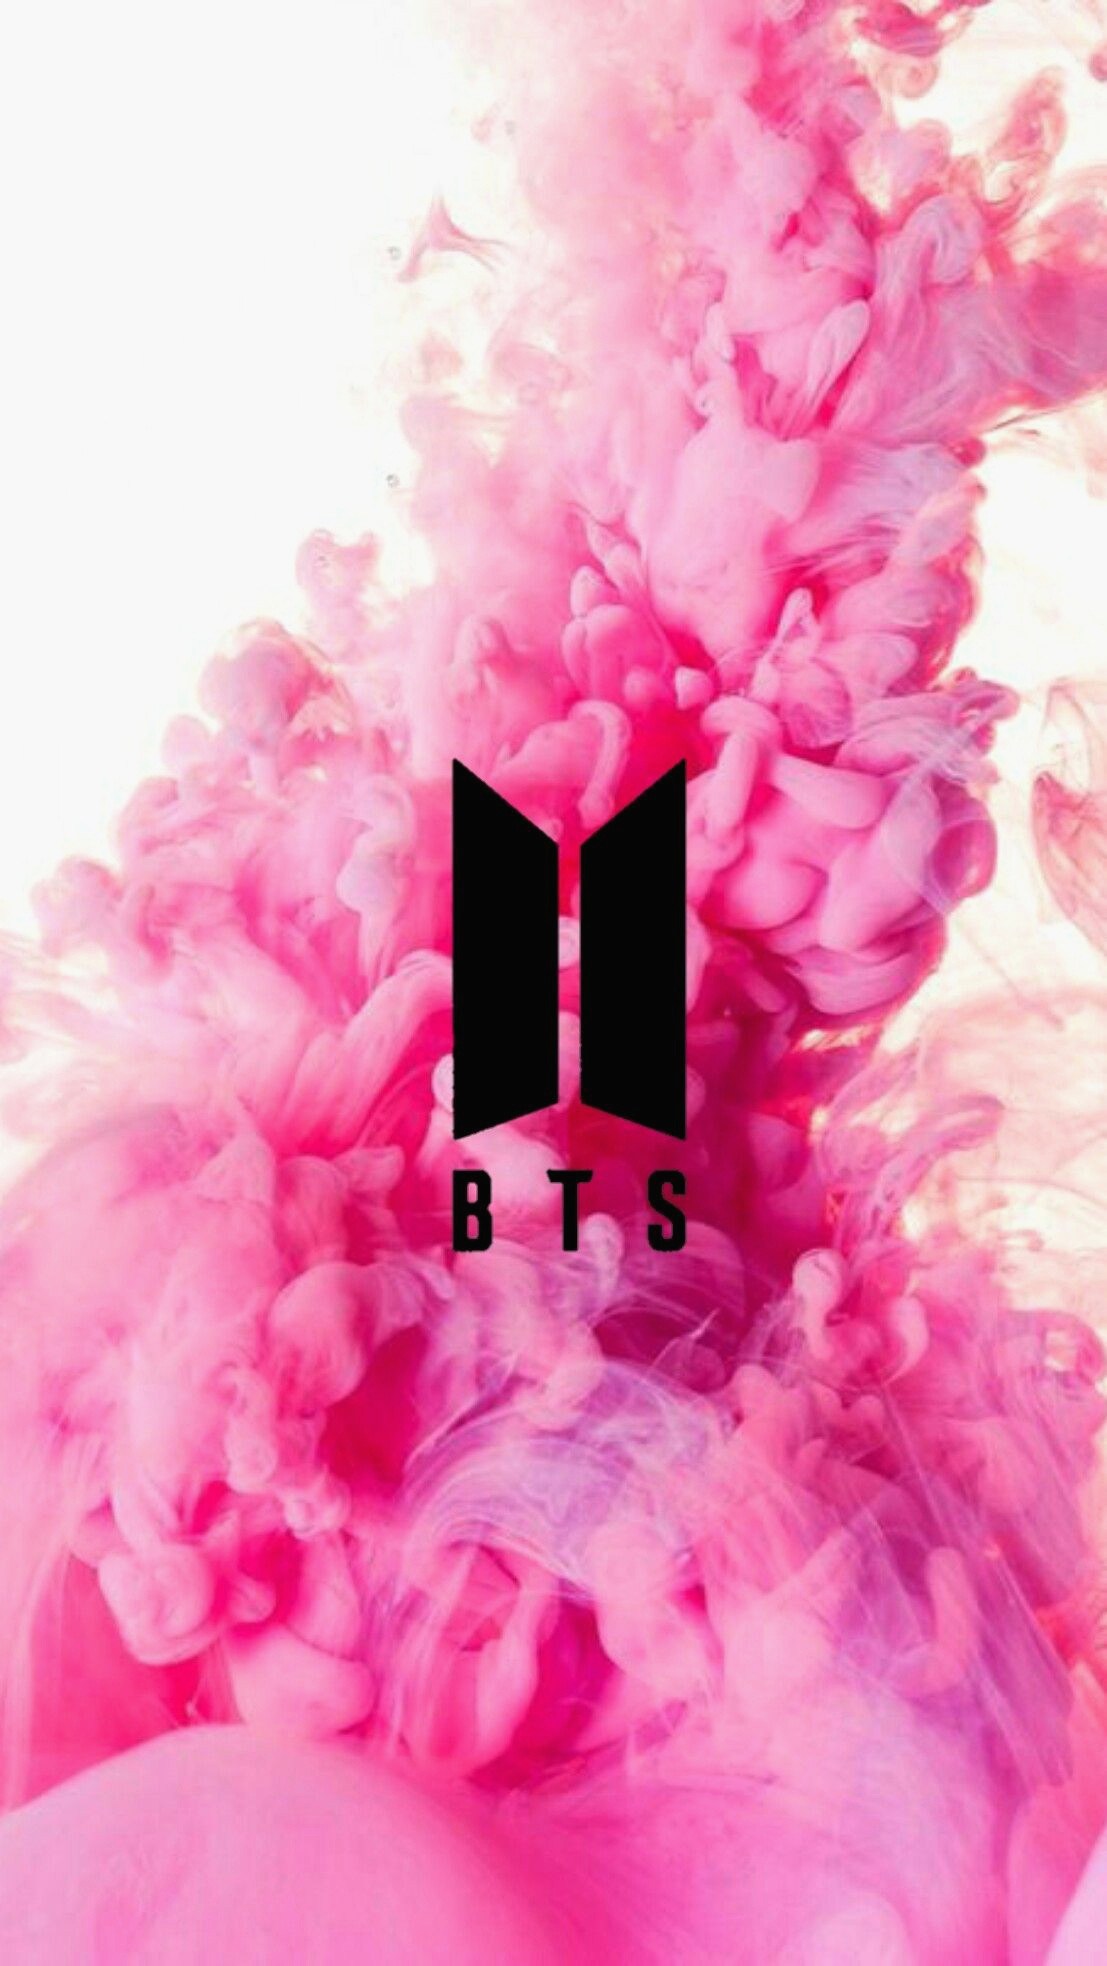 Hình ảnh logo BTS đẹp, đơn giản mà ấn tượng dành cho các Fan